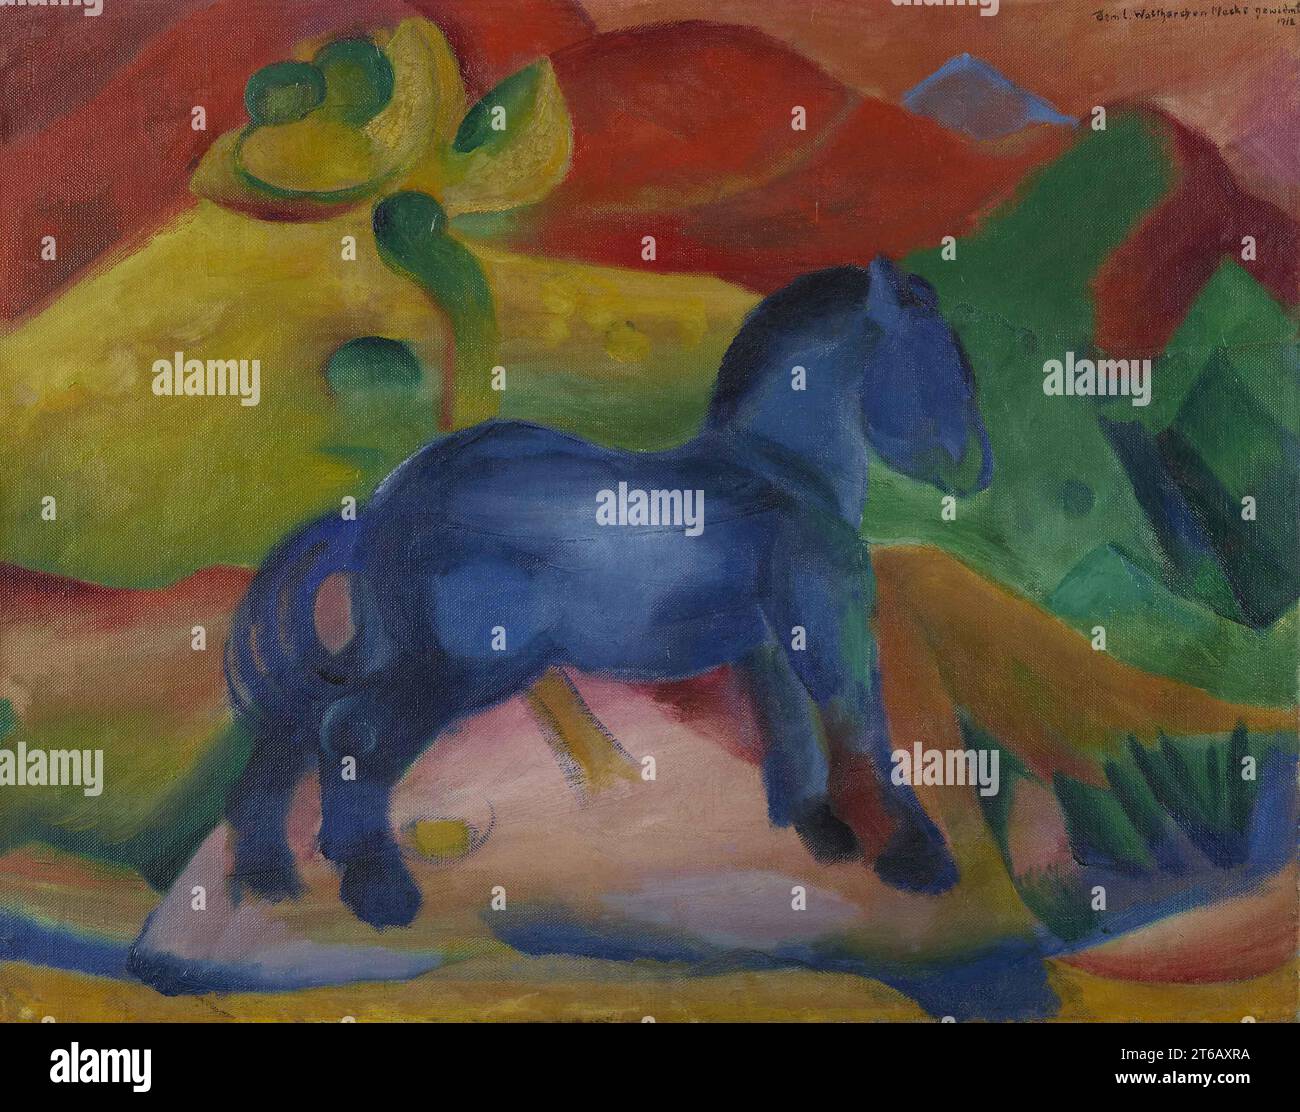 Titre : Little Blue Horse artiste : Franz Marc lieu : Musée de la Sarre, Sarrebrucken, Allemagne Moyen : huile sur toile Date : 1912 AD (C20ème AD) Dimensions : 58 x 73 cm Banque D'Images